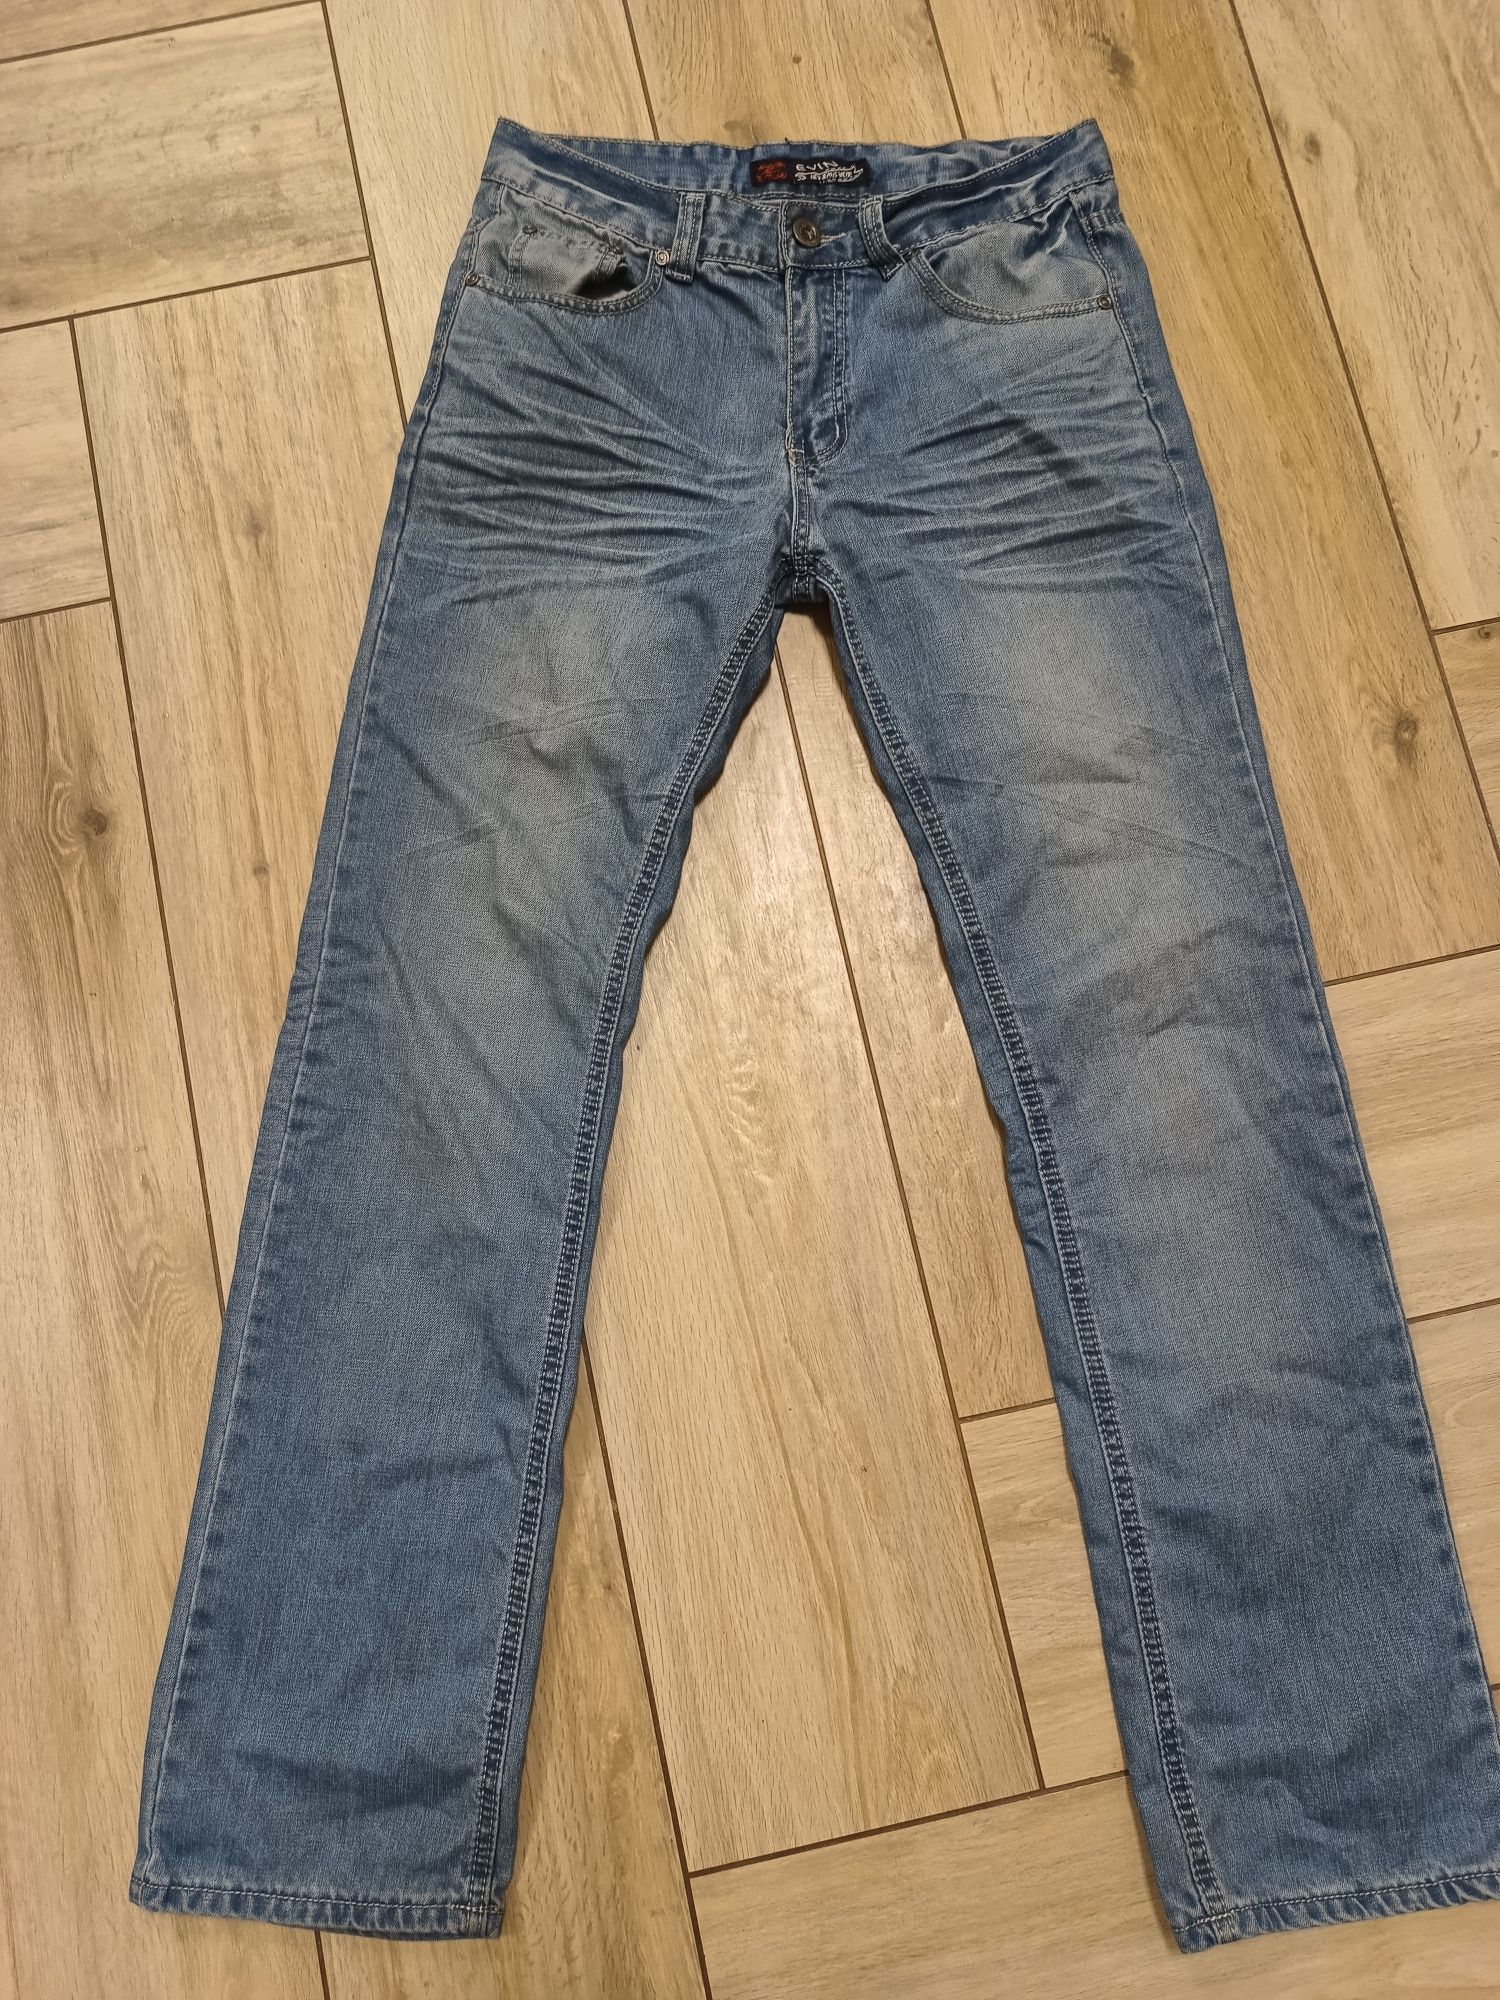 Męskie jeansowe spodnie S/M